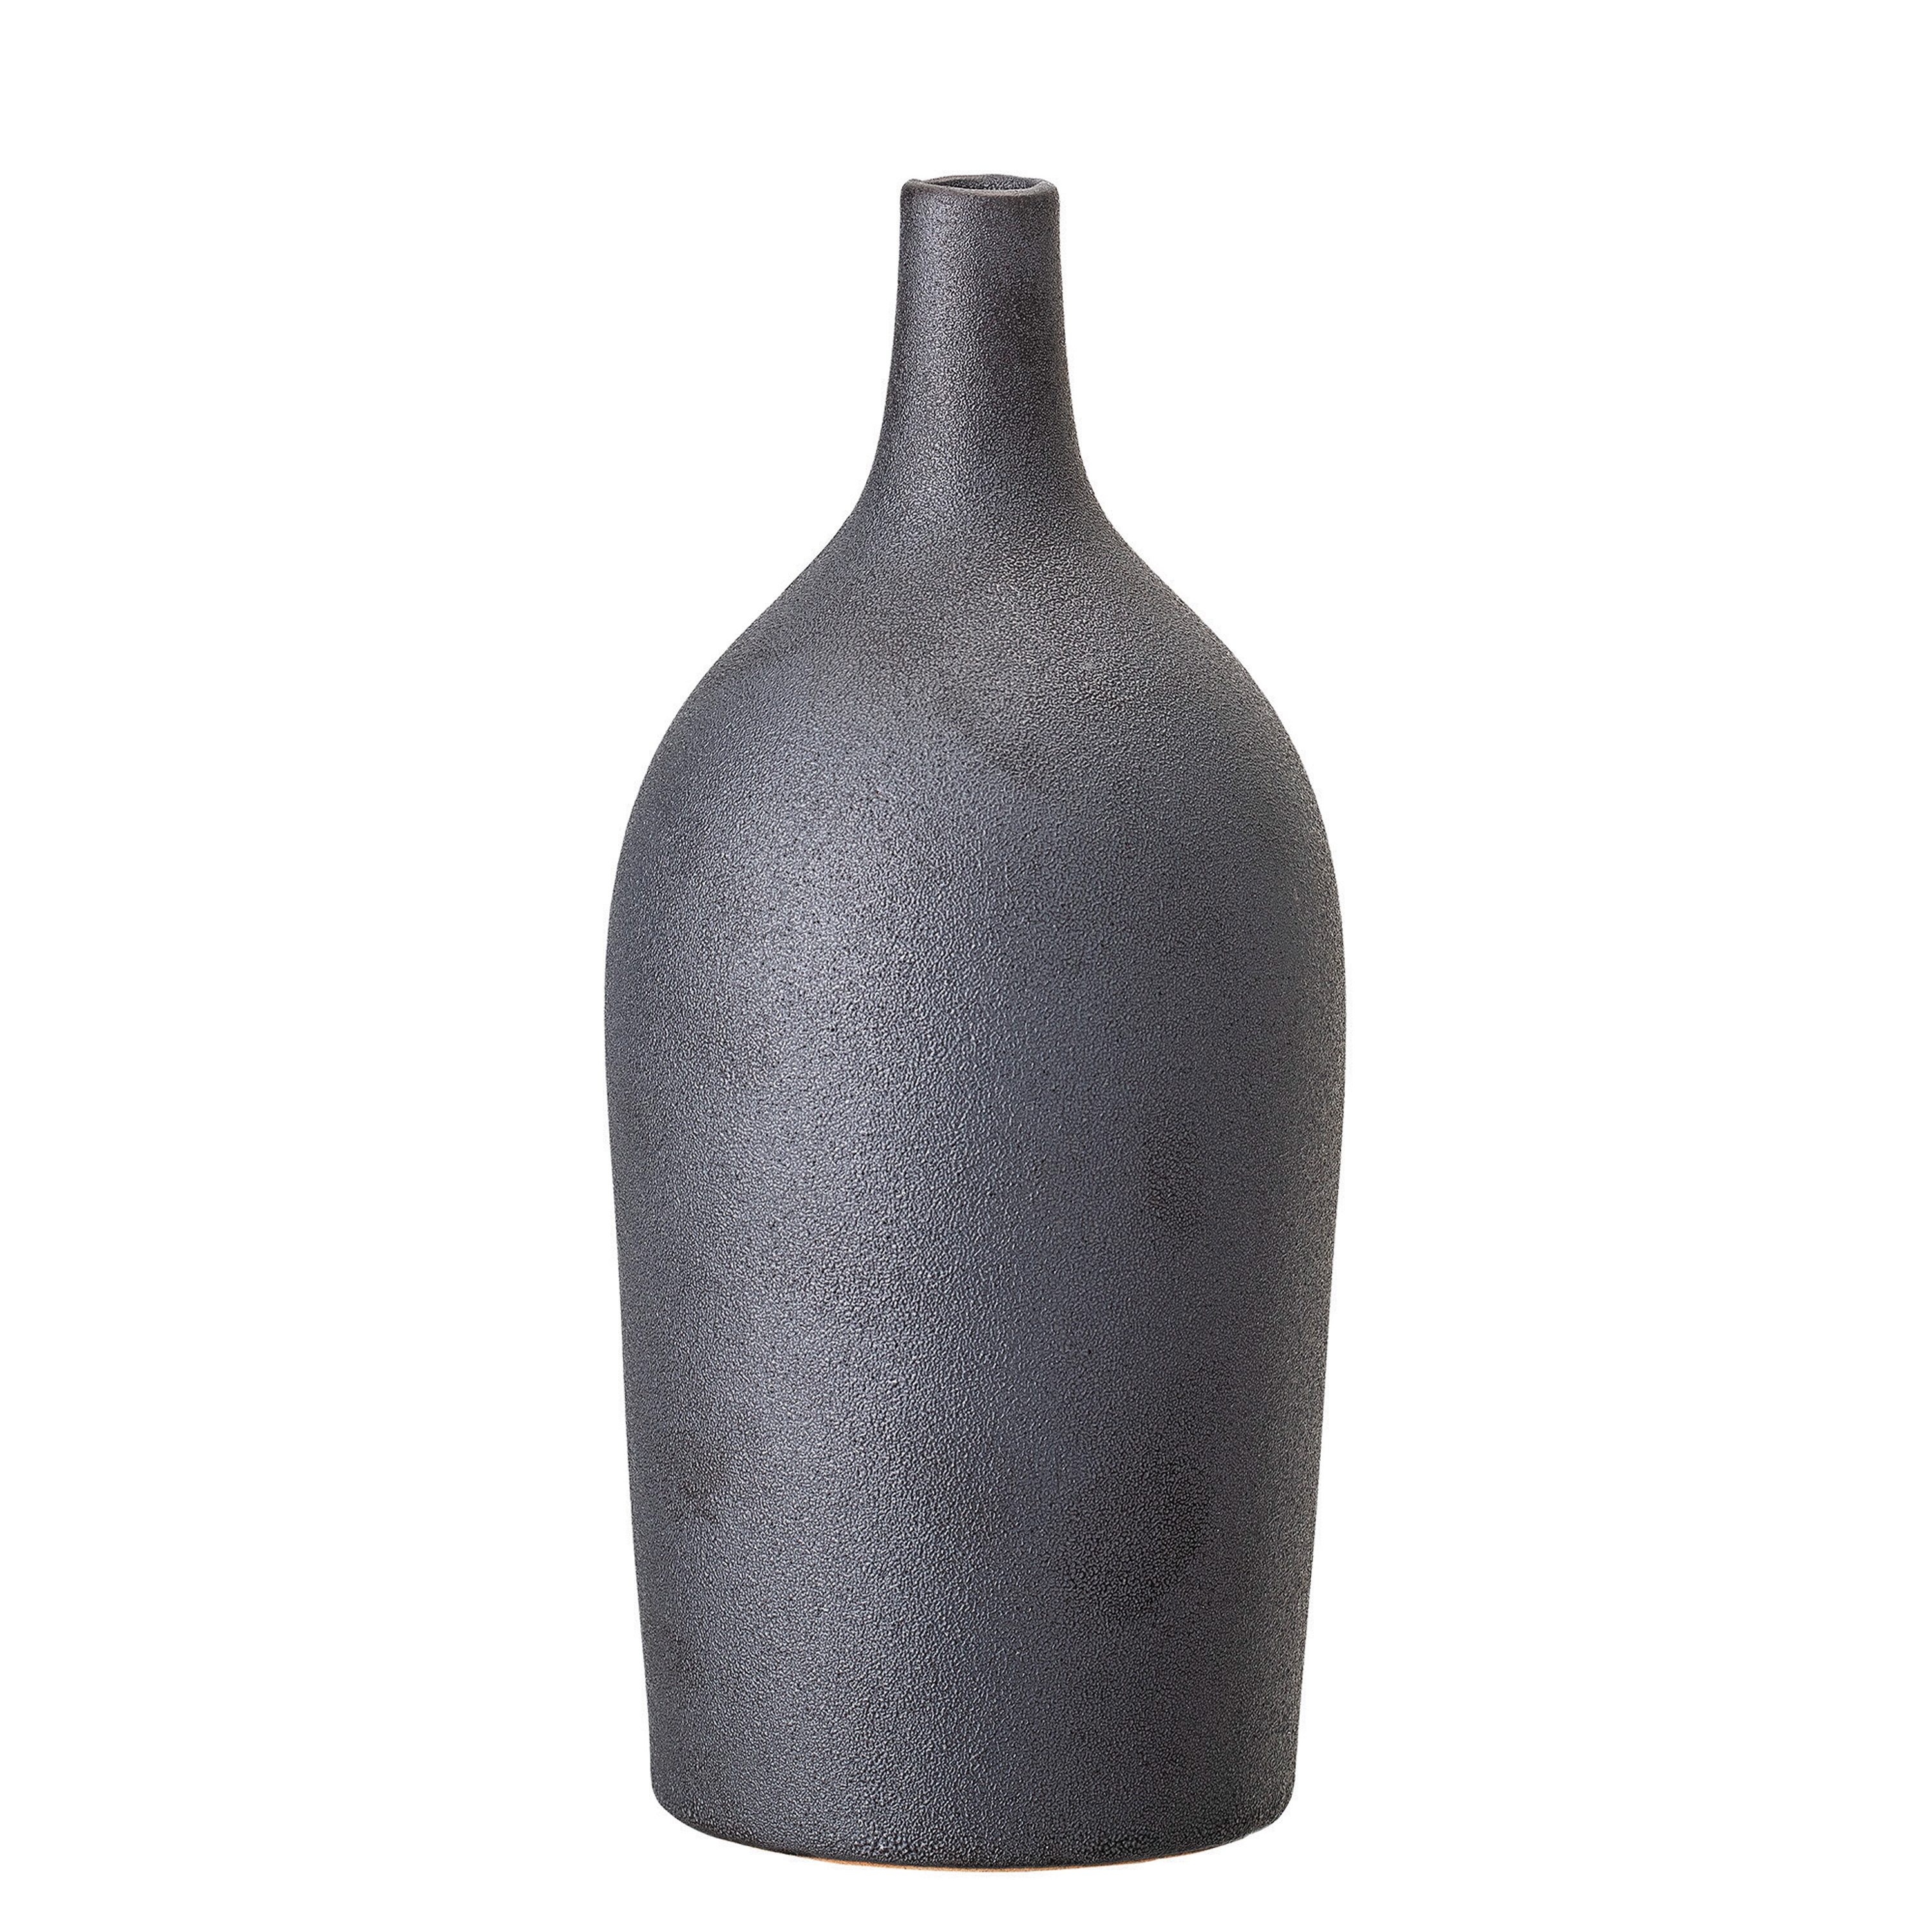 Stoneware Vase with Reactive Glaze Finish, Matte Black - Image 0